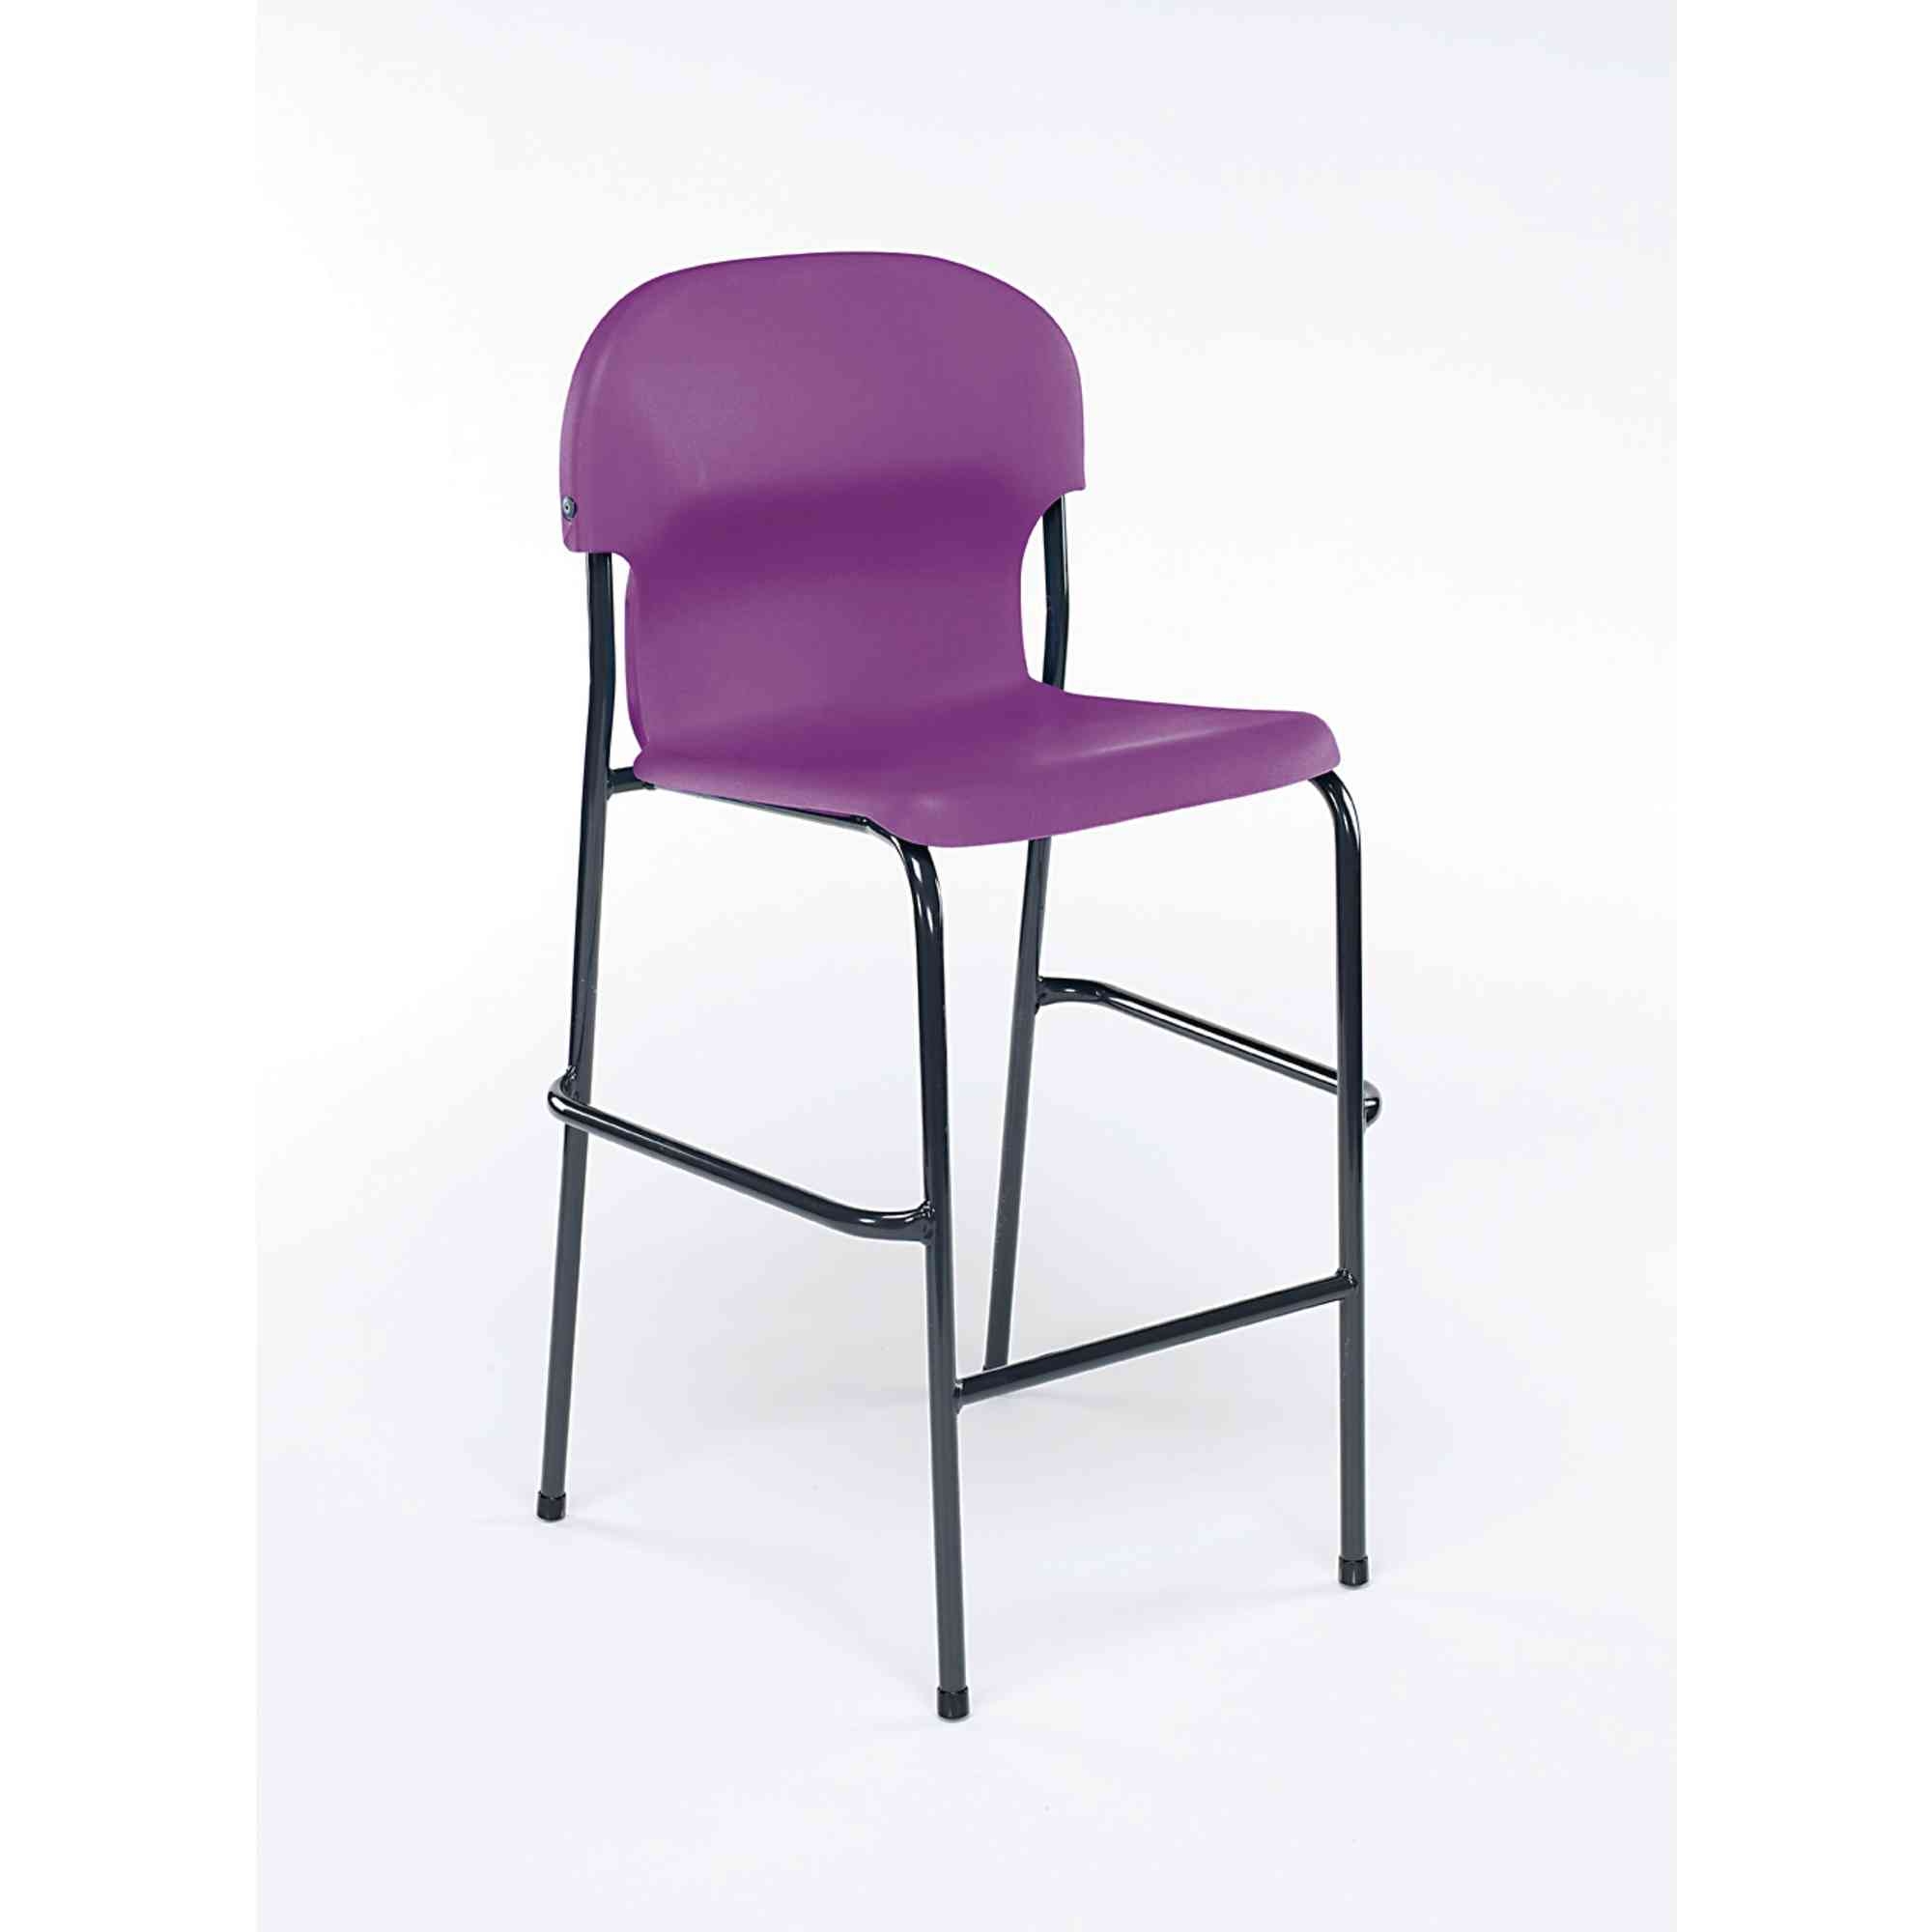 Chair 2000 High Chair - Lime